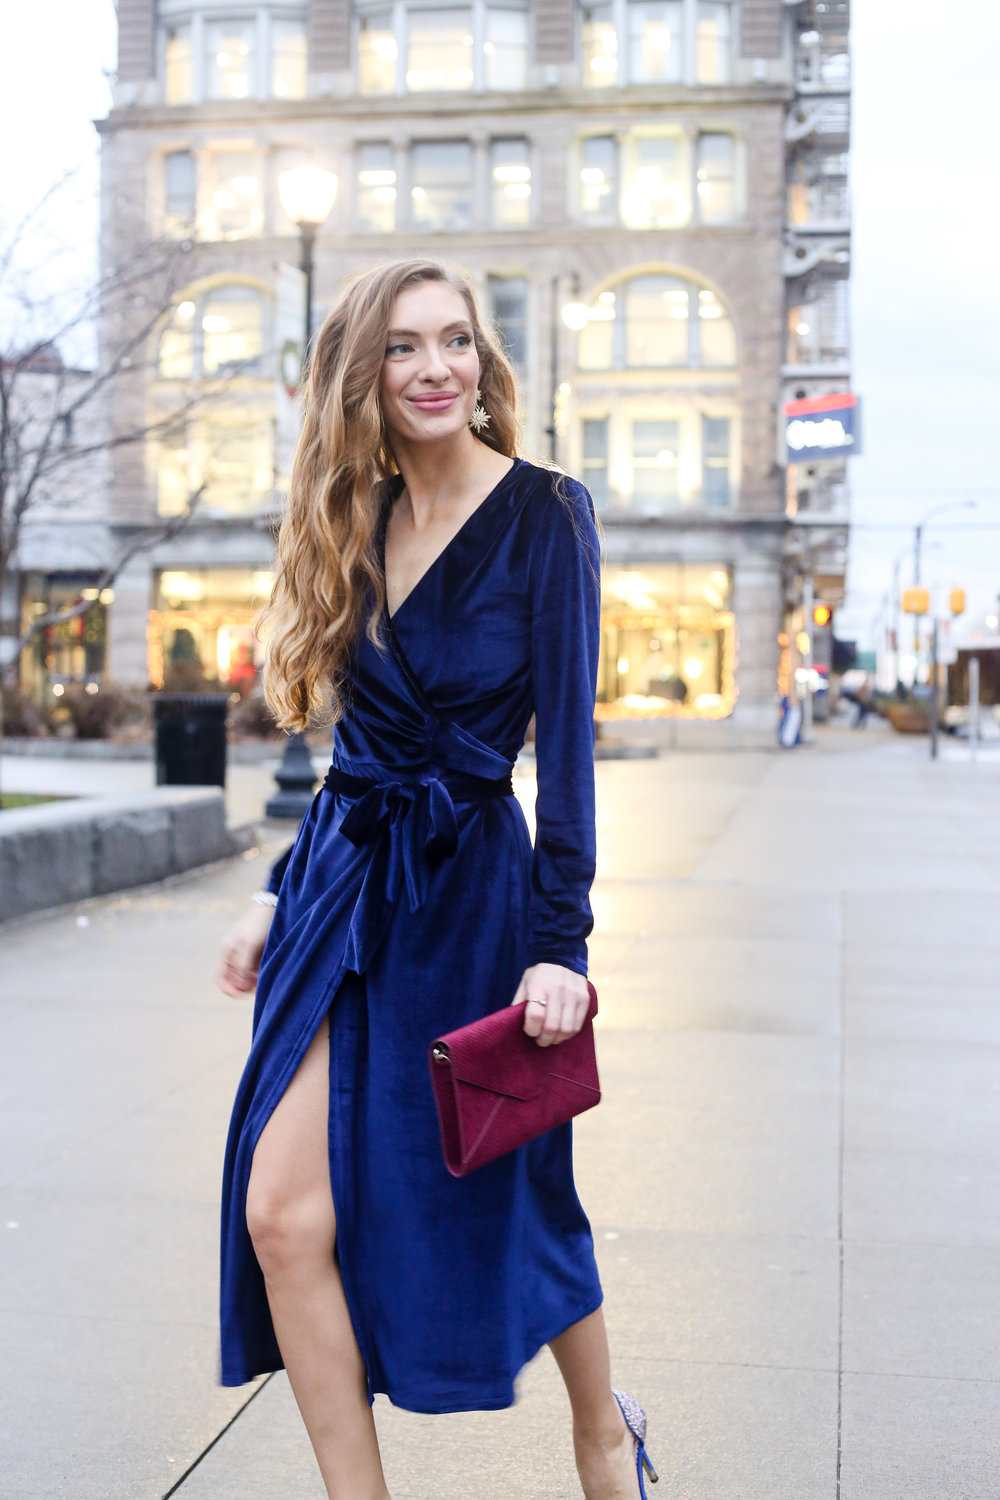 Velvet wrap klänning kombinera höst outfit idéer blont hår